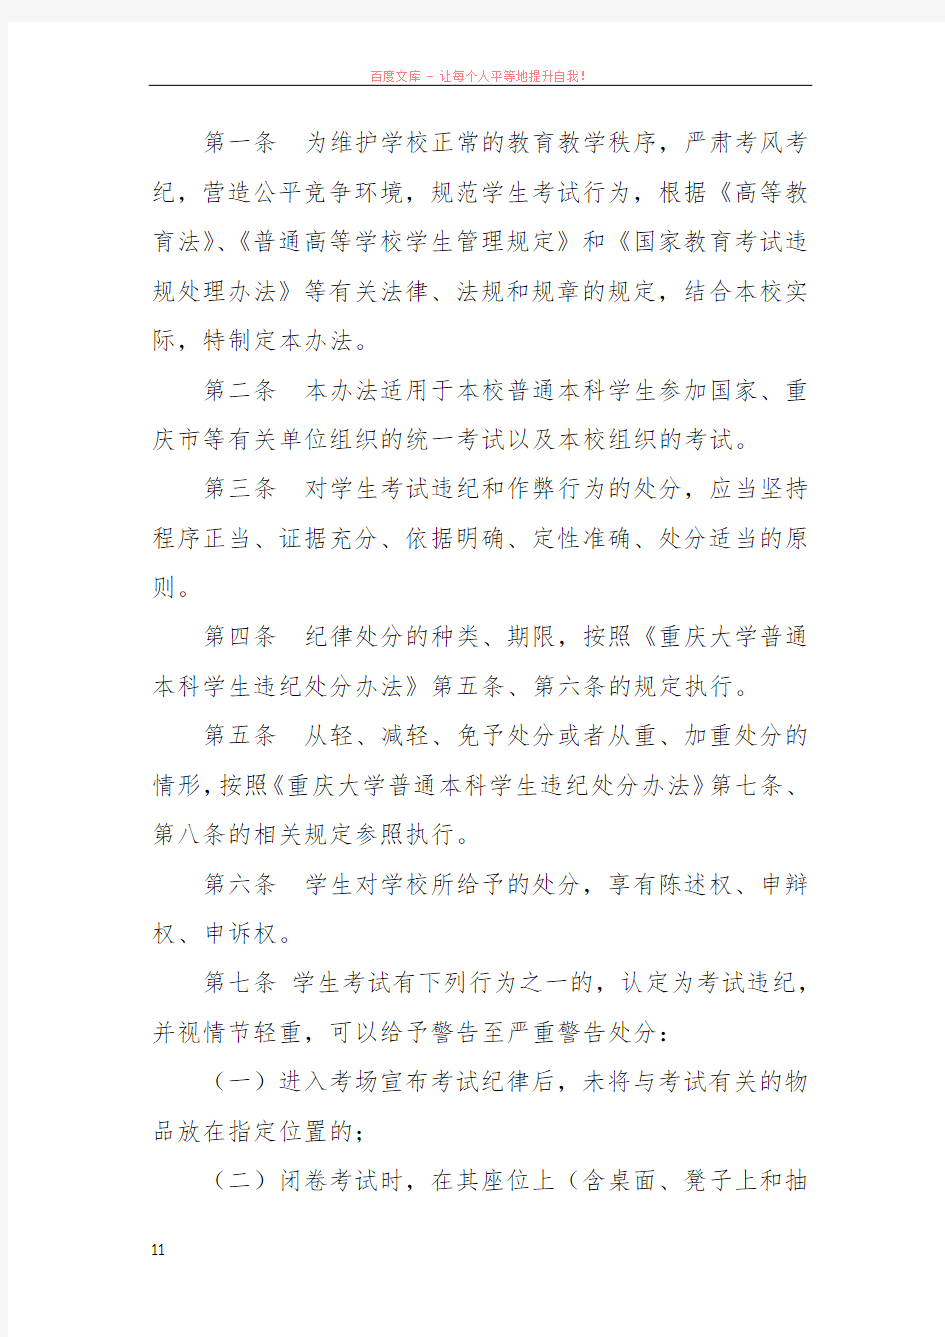 重庆大学普通本科学生考试违纪作弊处理办法